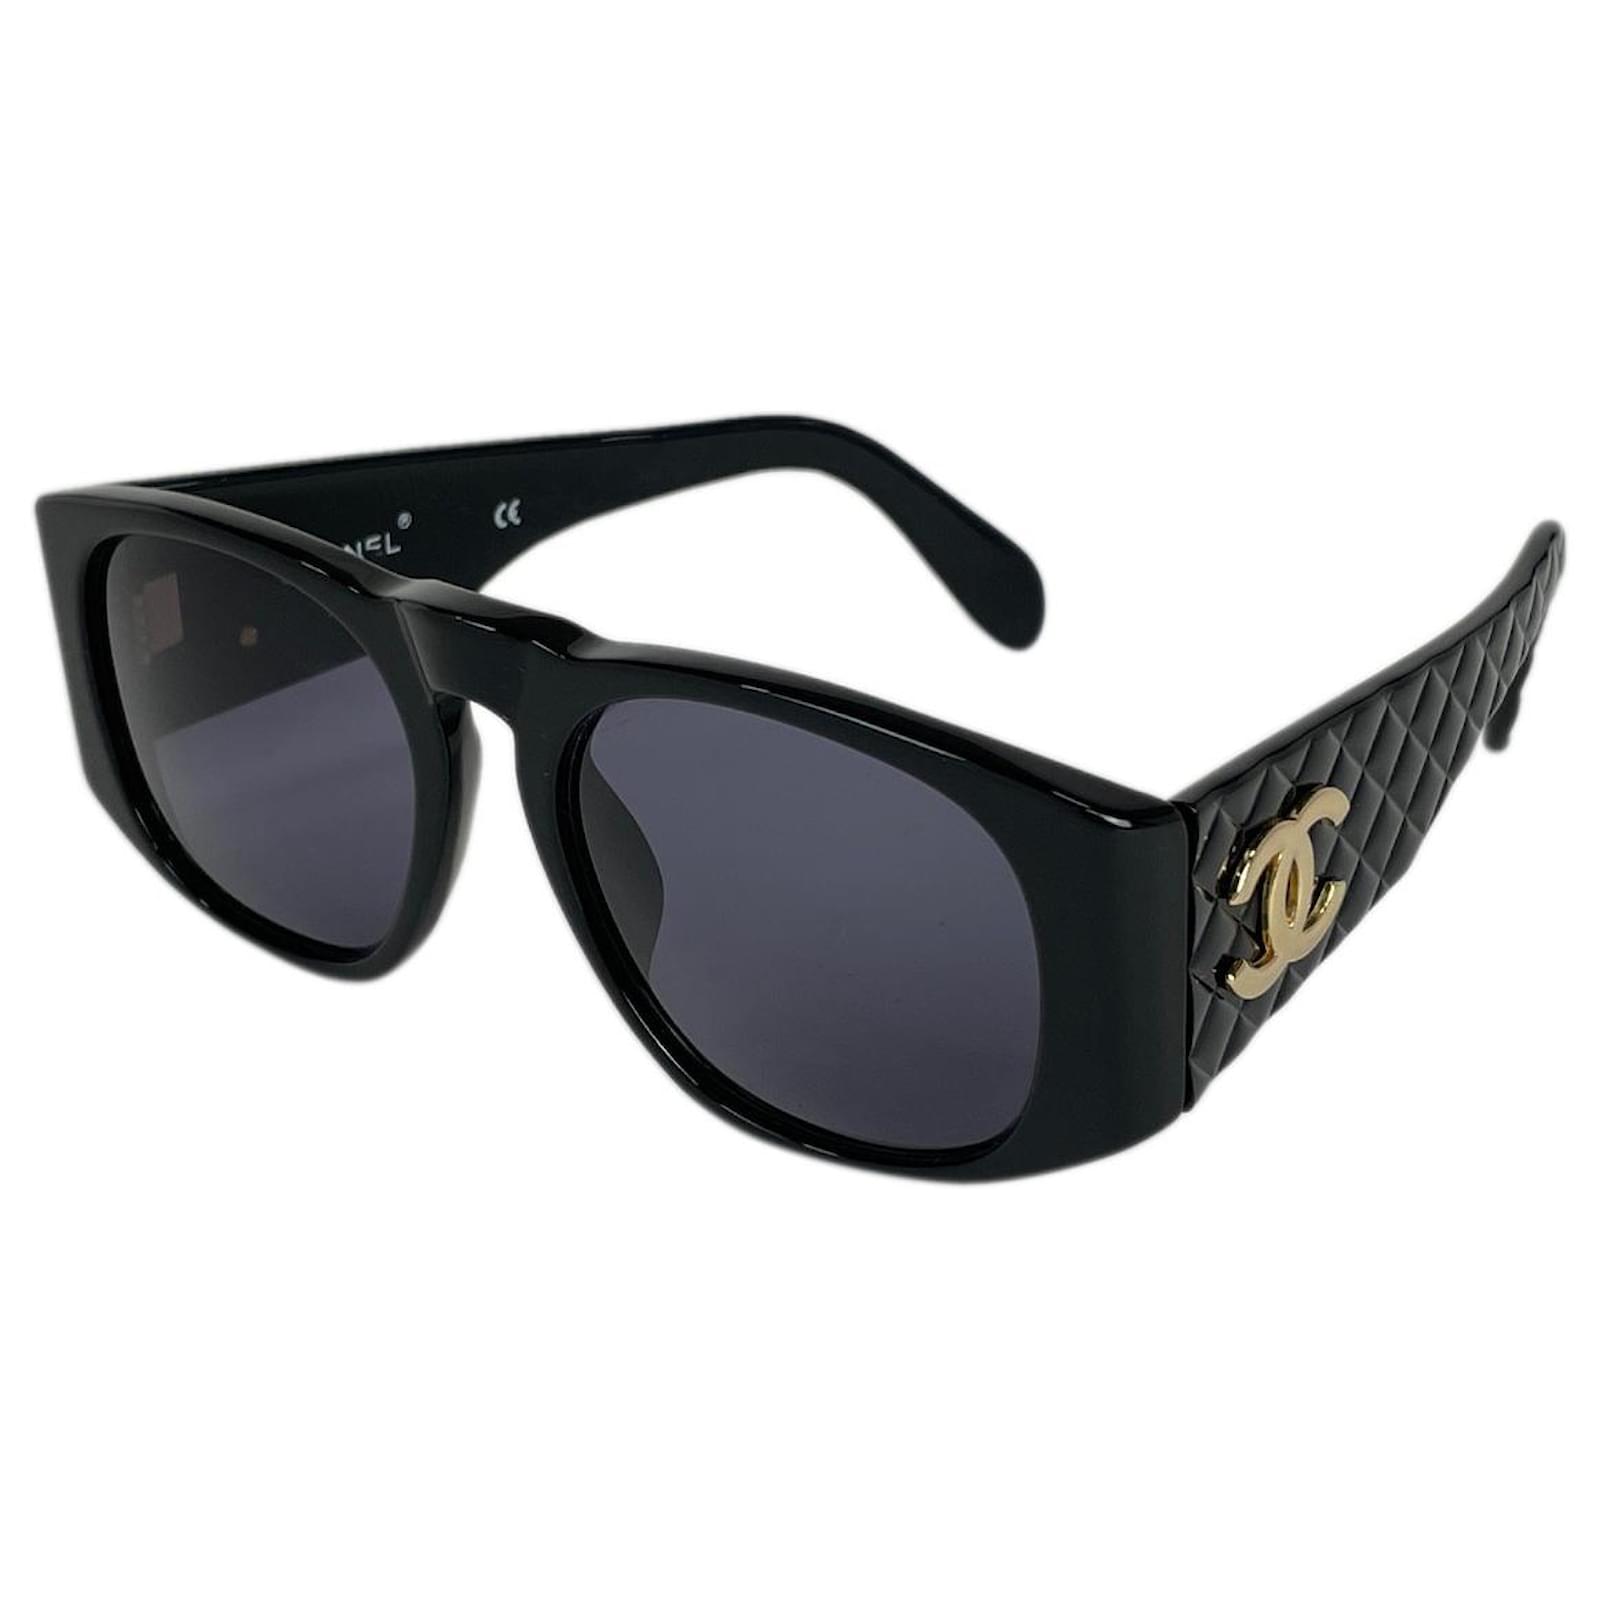 Sunglasses Chanel Black in Plastic - 24130765